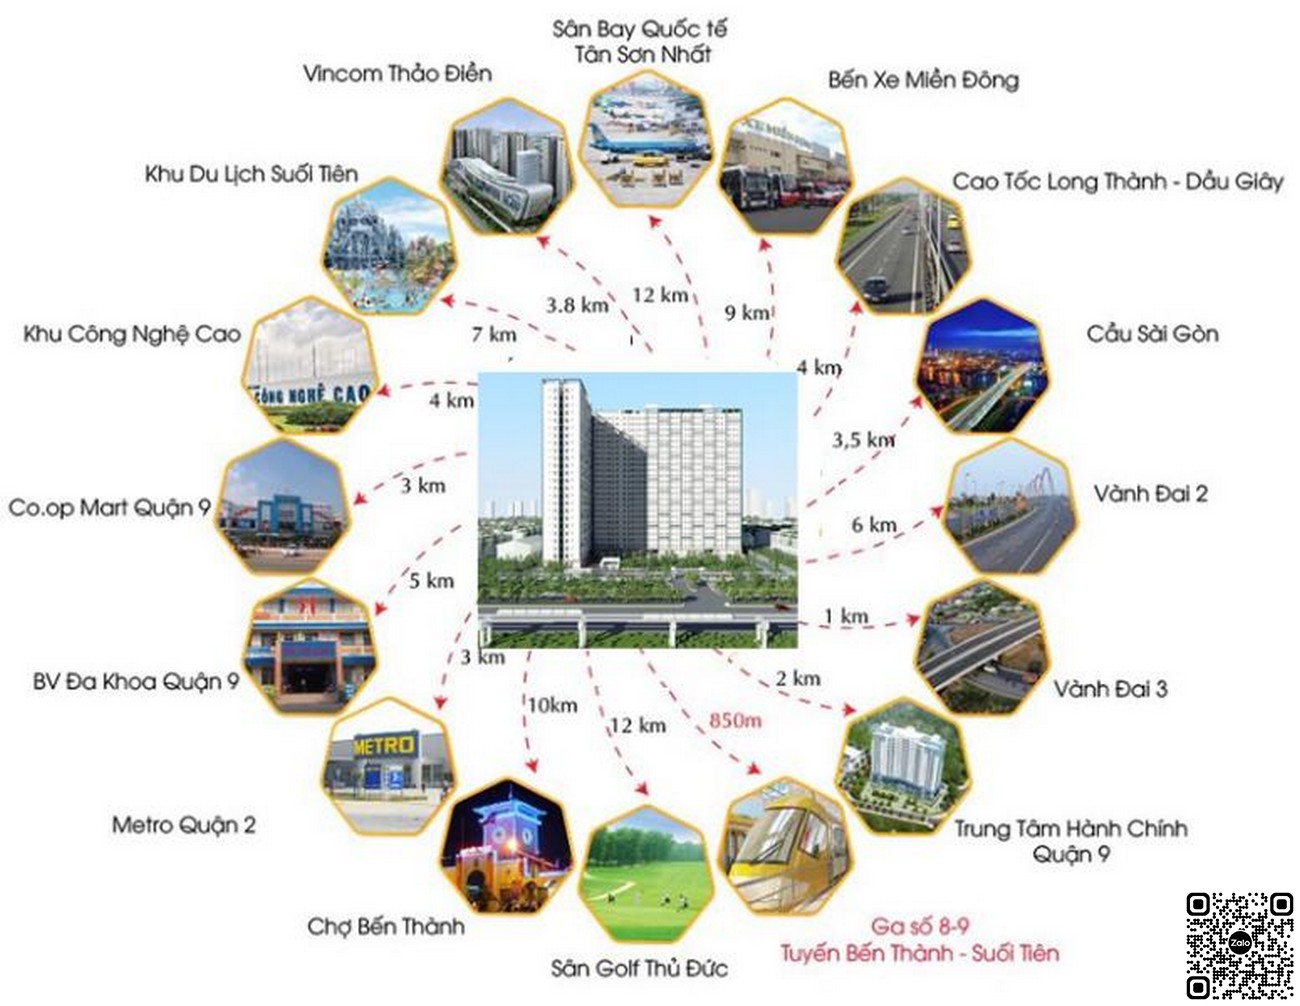 Liên kết vùng dự án Saigon Gateway Quận 9